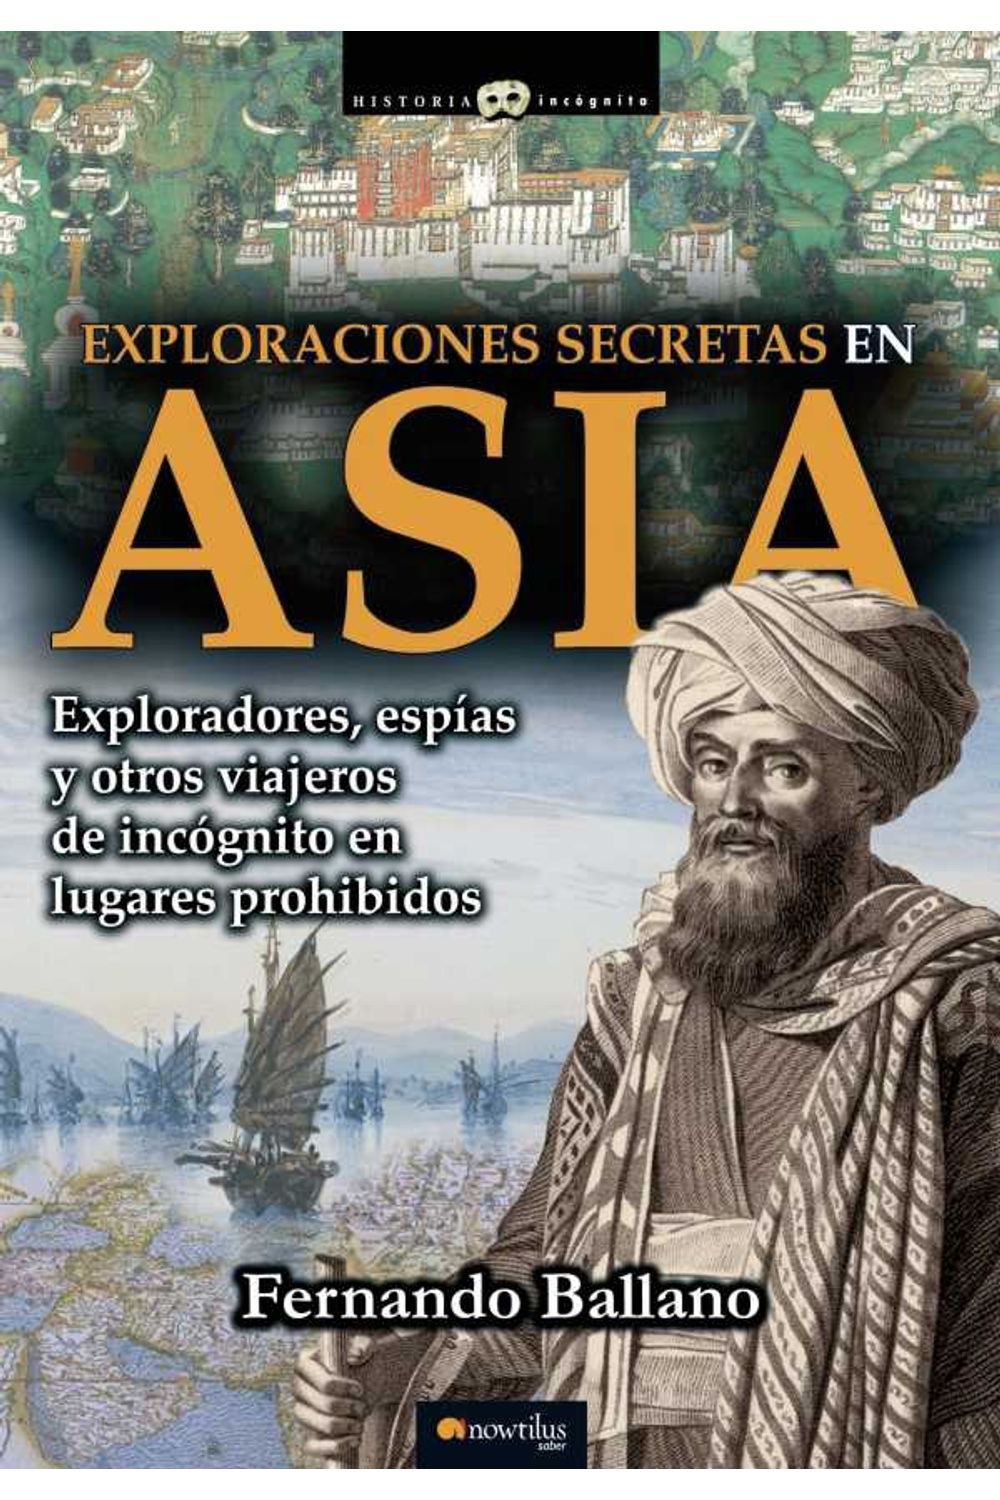 bw-exploraciones-secretas-en-asia-nowtilus-9788499674964